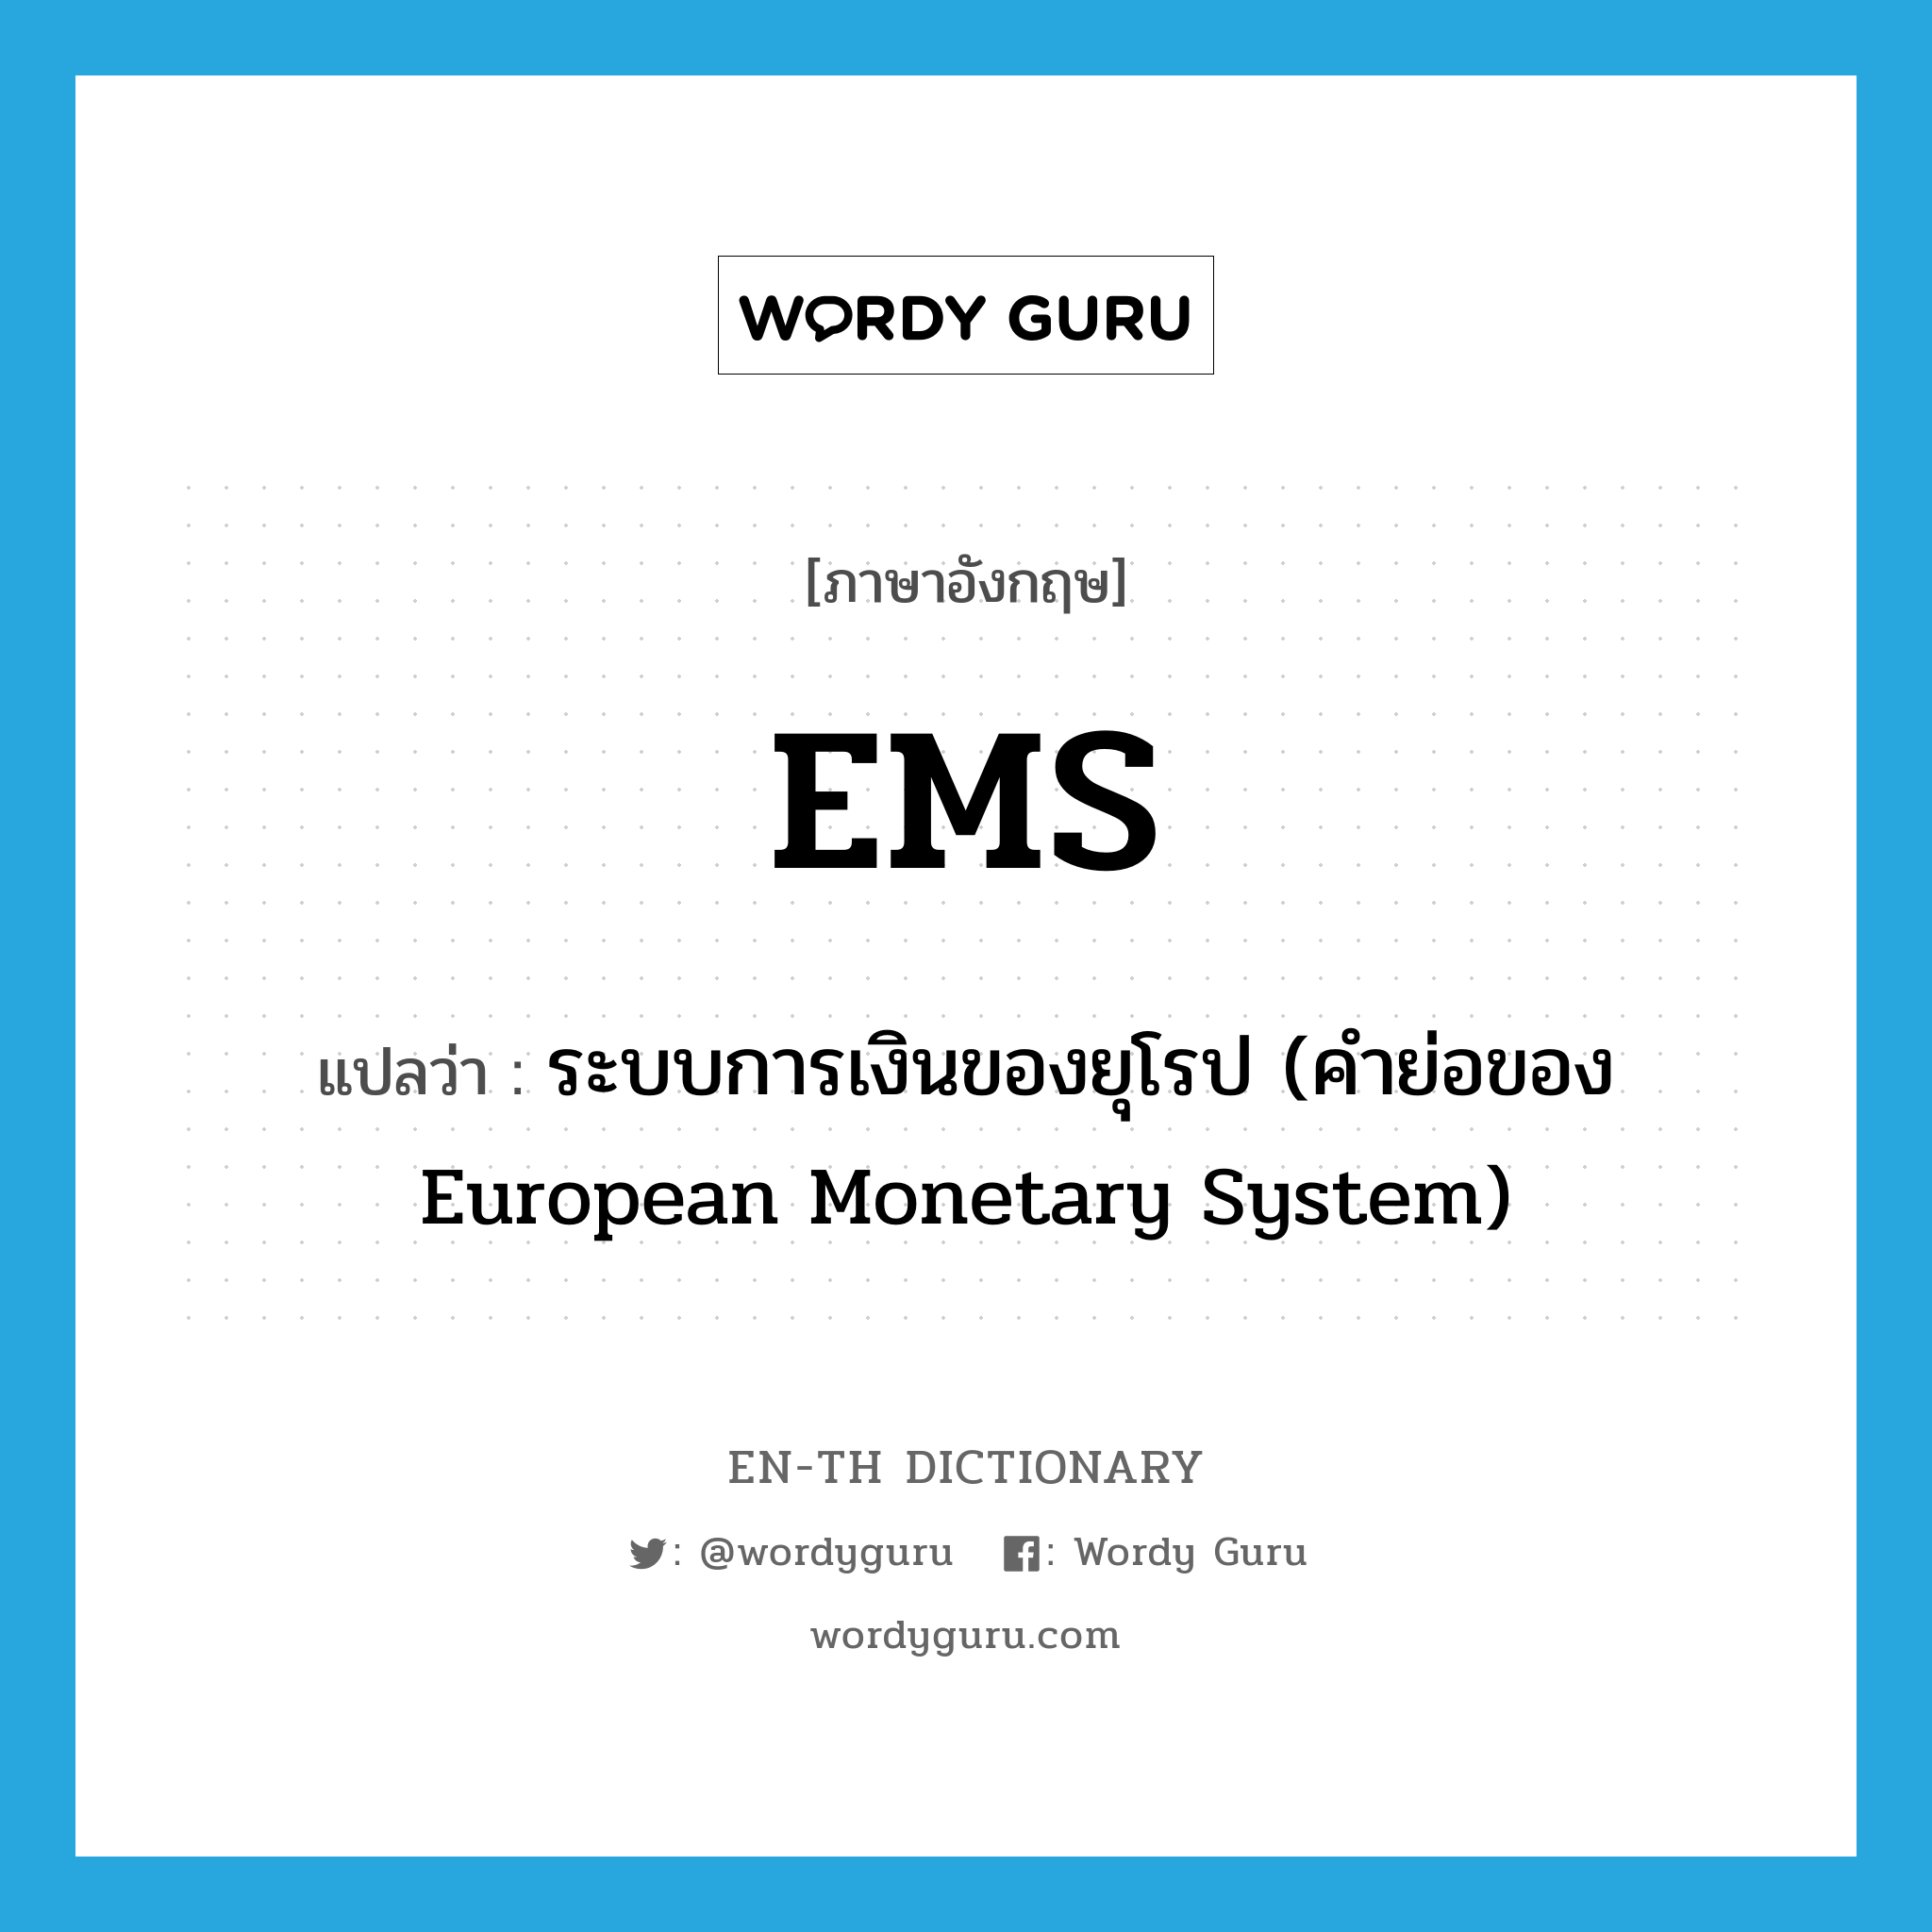 ระบบการเงินของยุโรป (คำย่อของ European Monetary System) ภาษาอังกฤษ?, คำศัพท์ภาษาอังกฤษ ระบบการเงินของยุโรป (คำย่อของ European Monetary System) แปลว่า EMS ประเภท ABBR หมวด ABBR